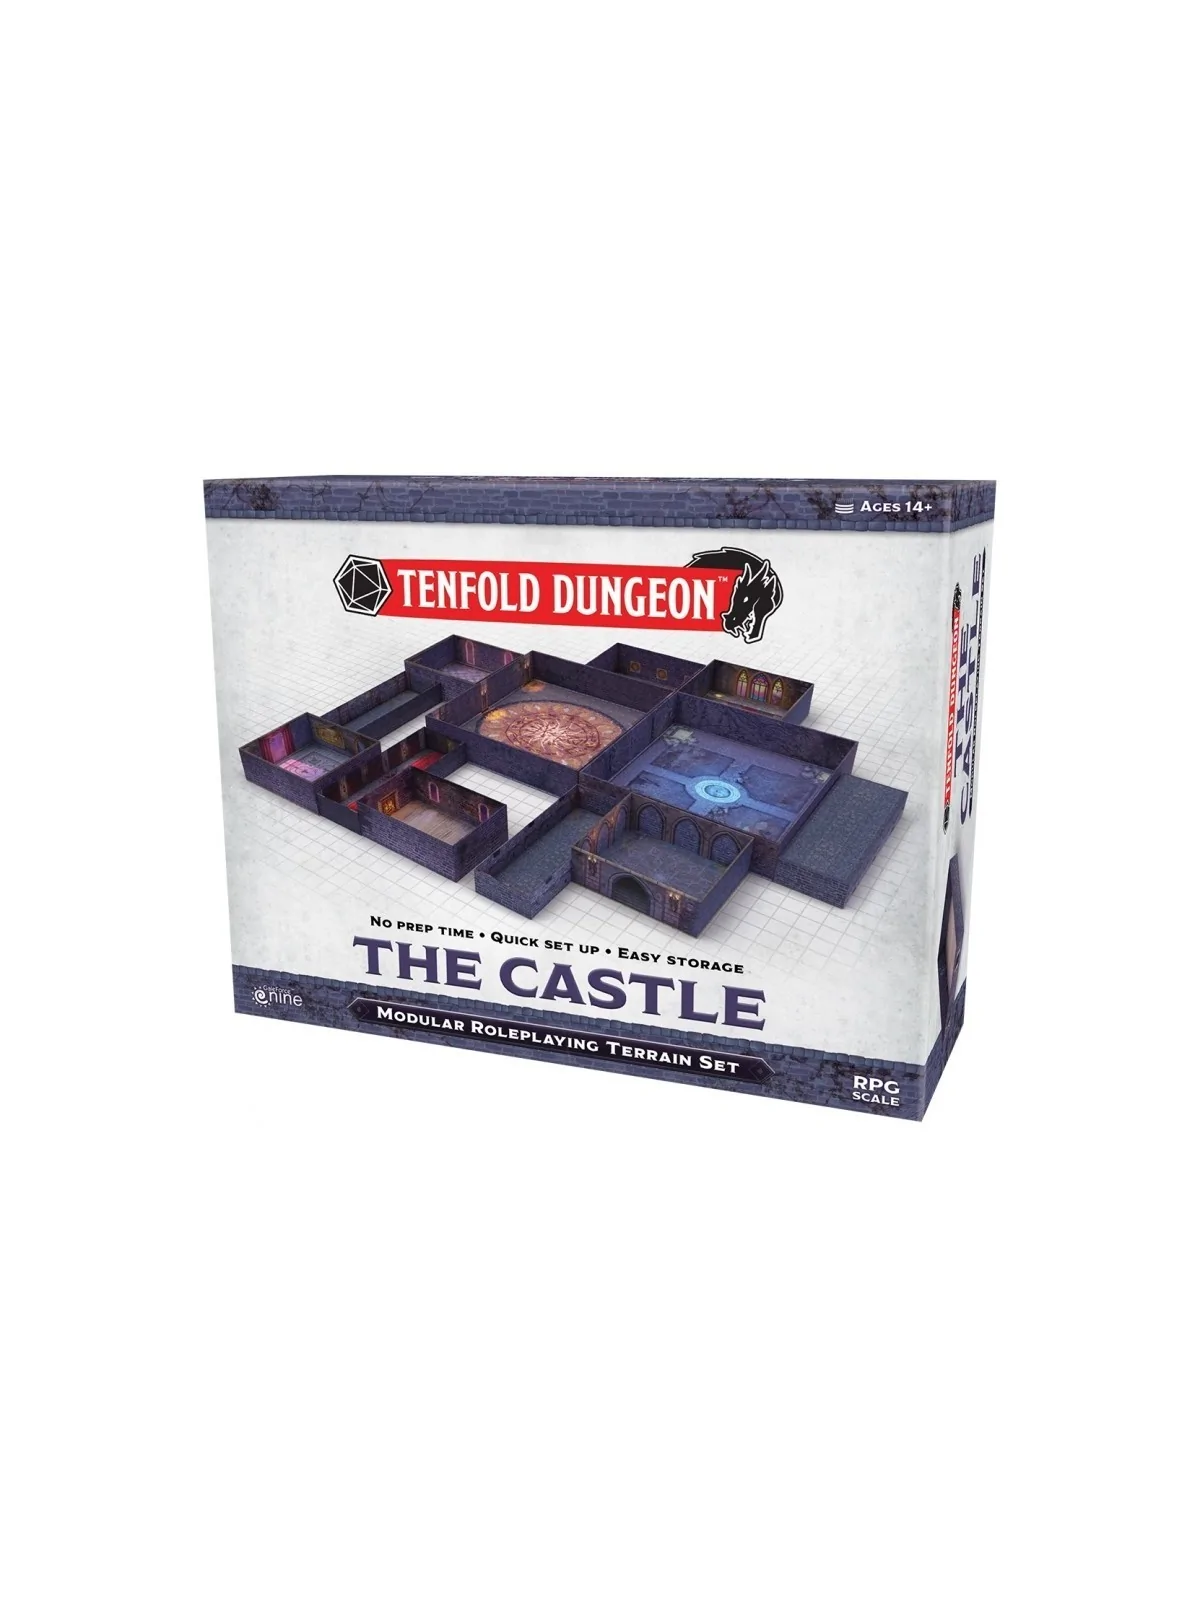 Comprar Tenfold Dungeon: The Castle (Inglés) barato al mejor precio 61